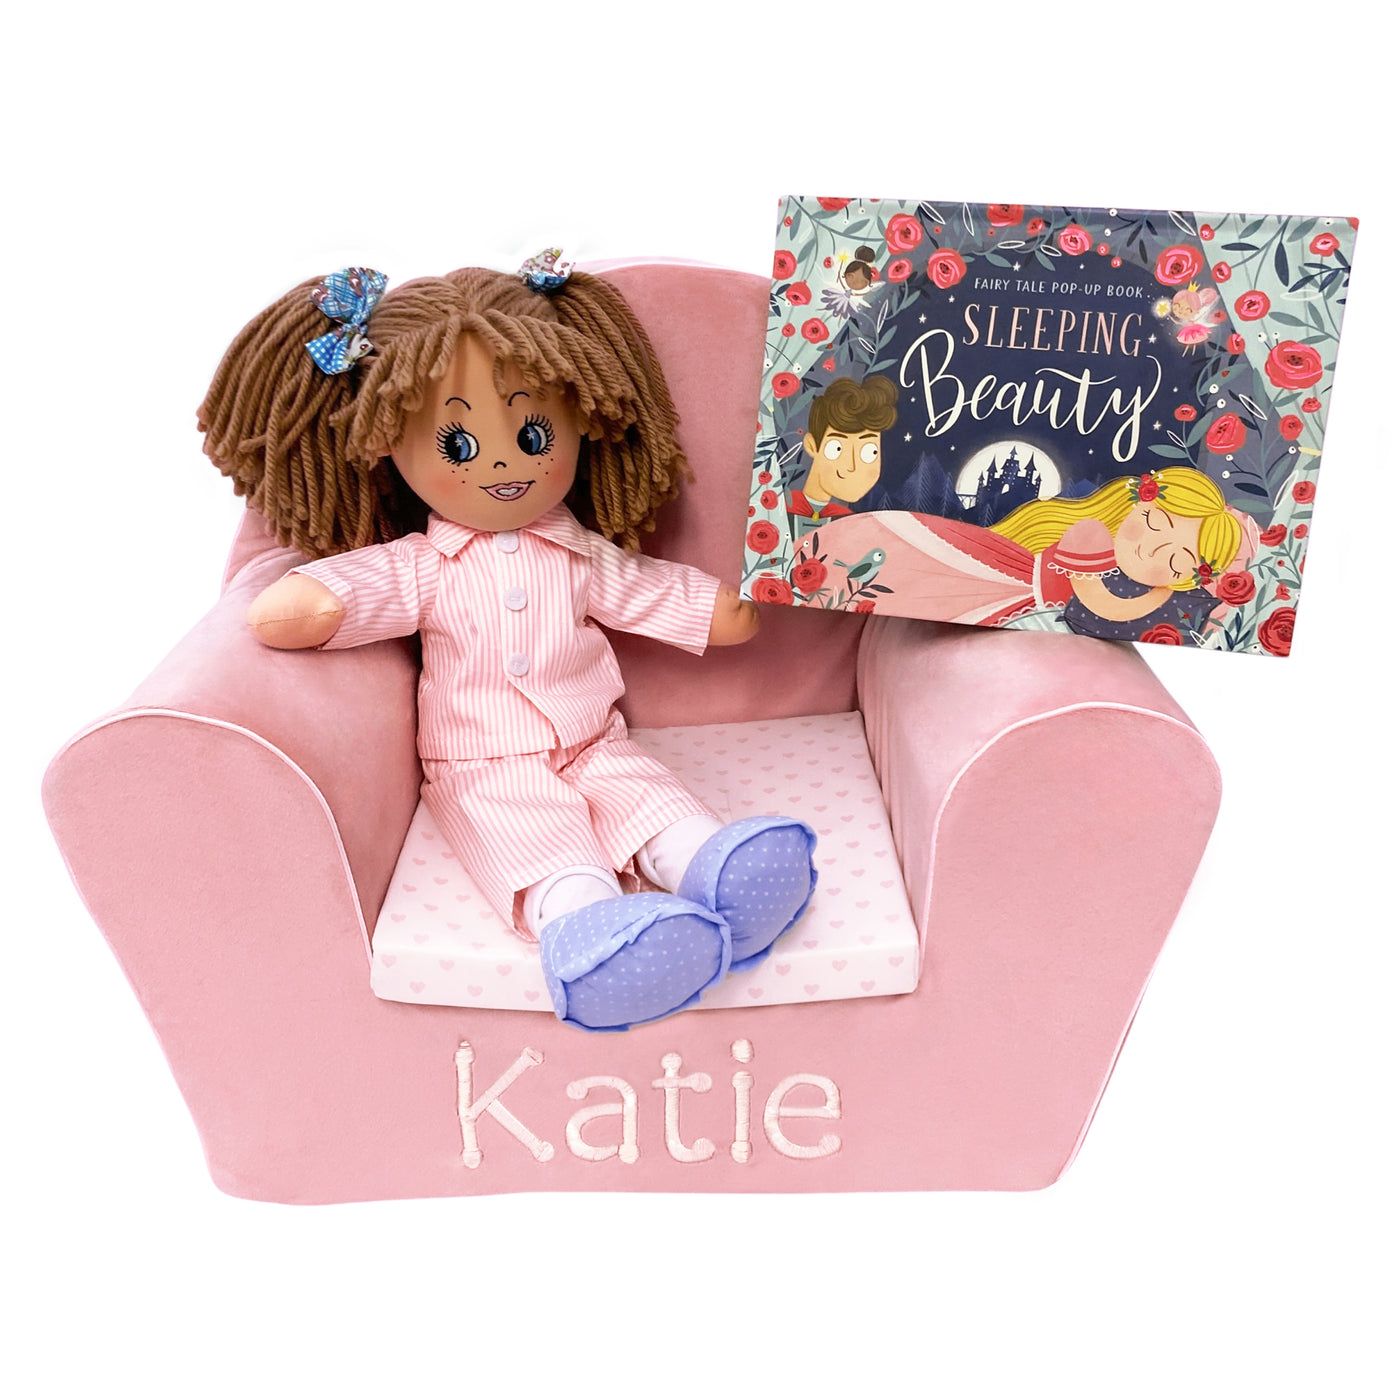 Personalised Rag Doll Gift Set - Velvet Chair, Ella Rose in her PJs & Book